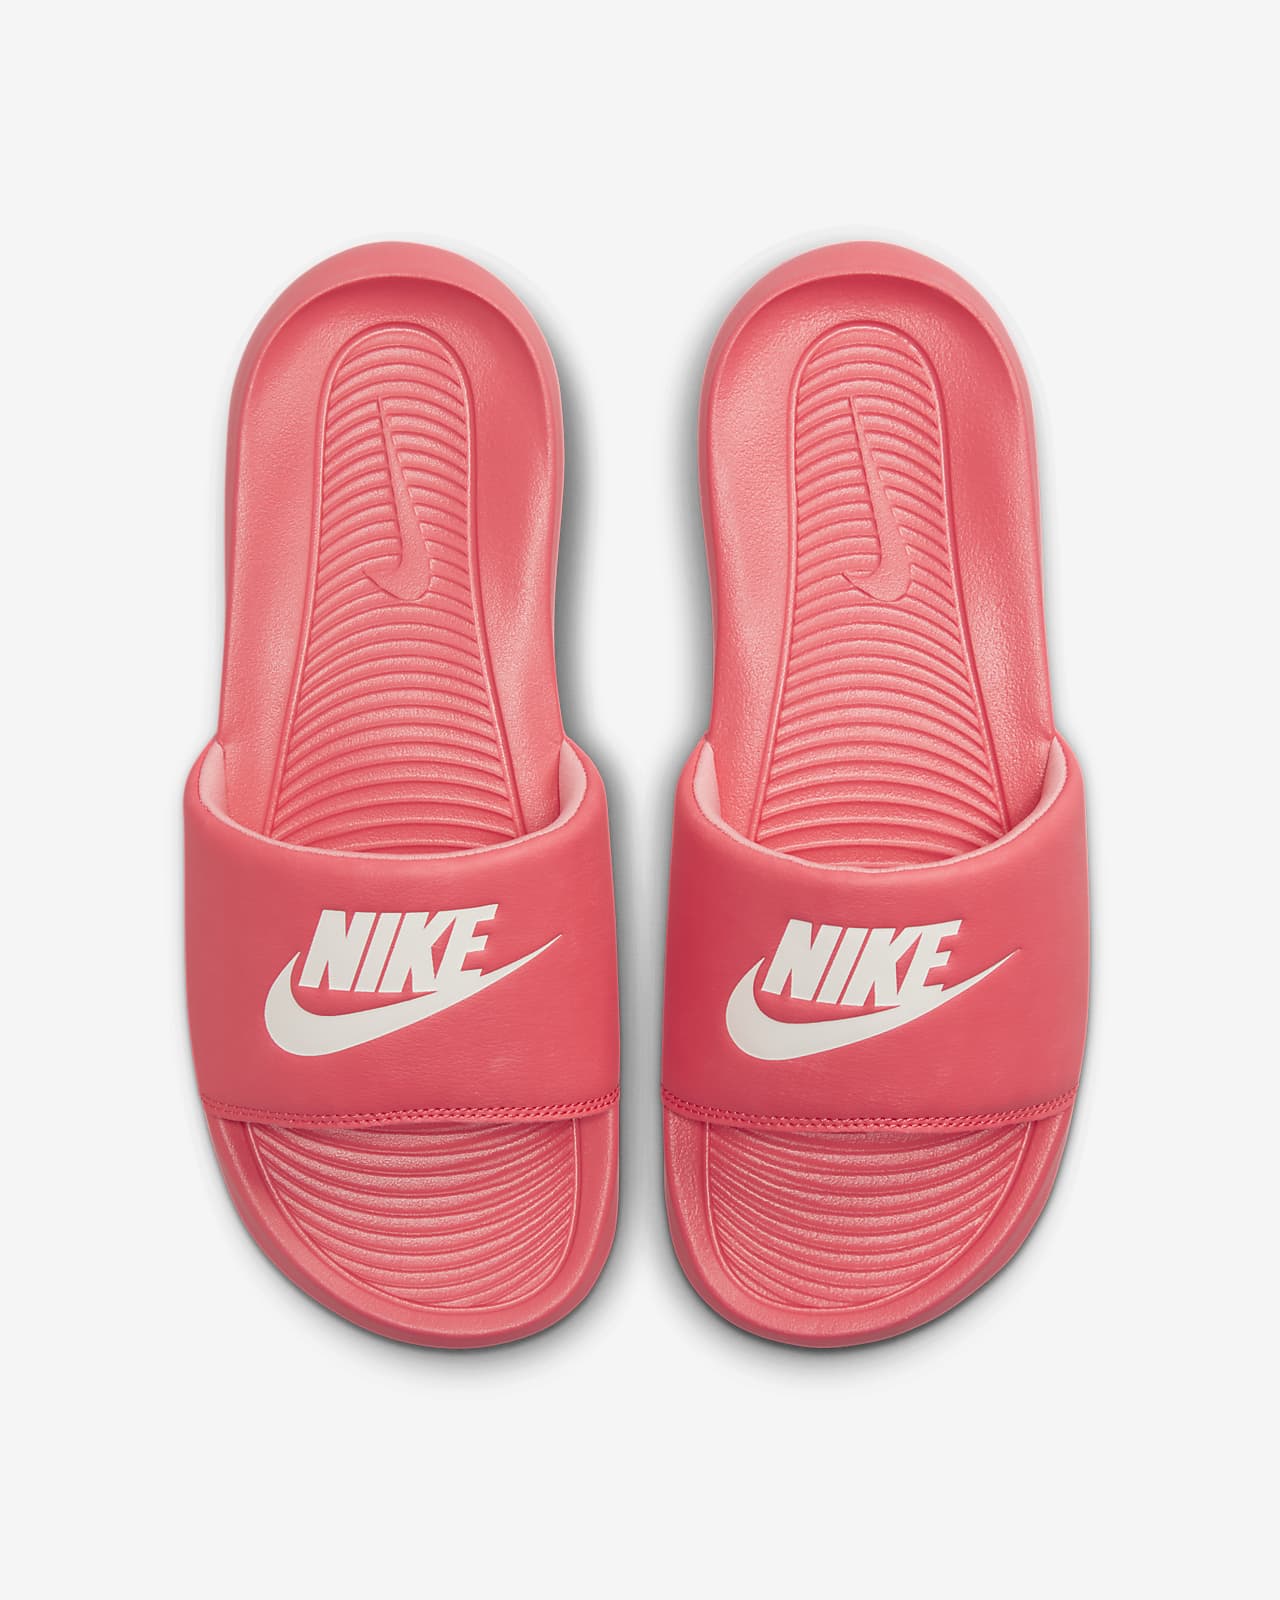 Nike Benassi Floral Women's Slide Sandal Size 6 (Red)